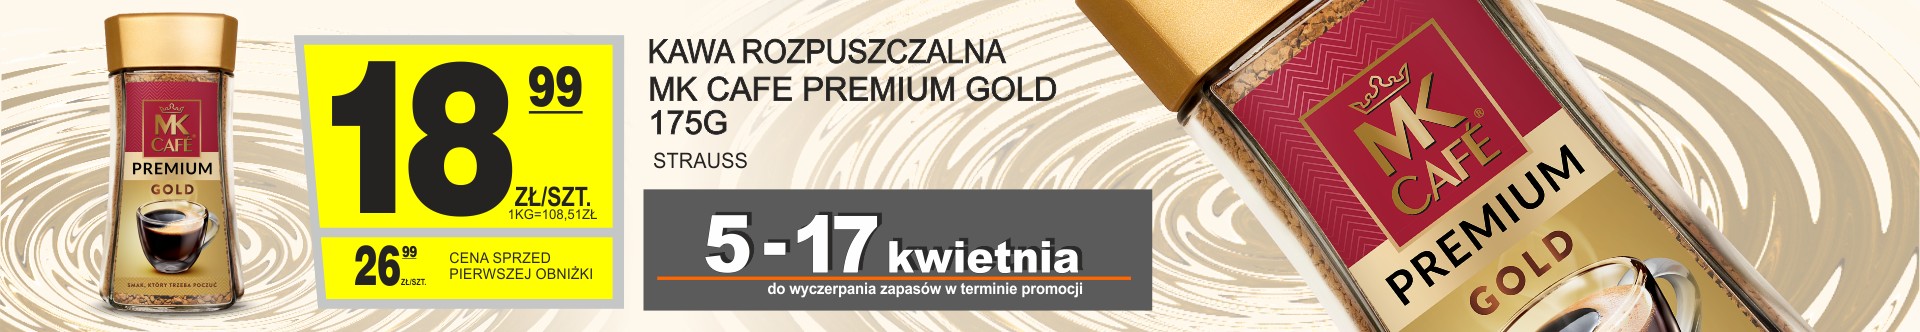 Sklepy Społem - KAWA ROZPUSZCZALNA MK CAFE PREMIUM GOLD 175G